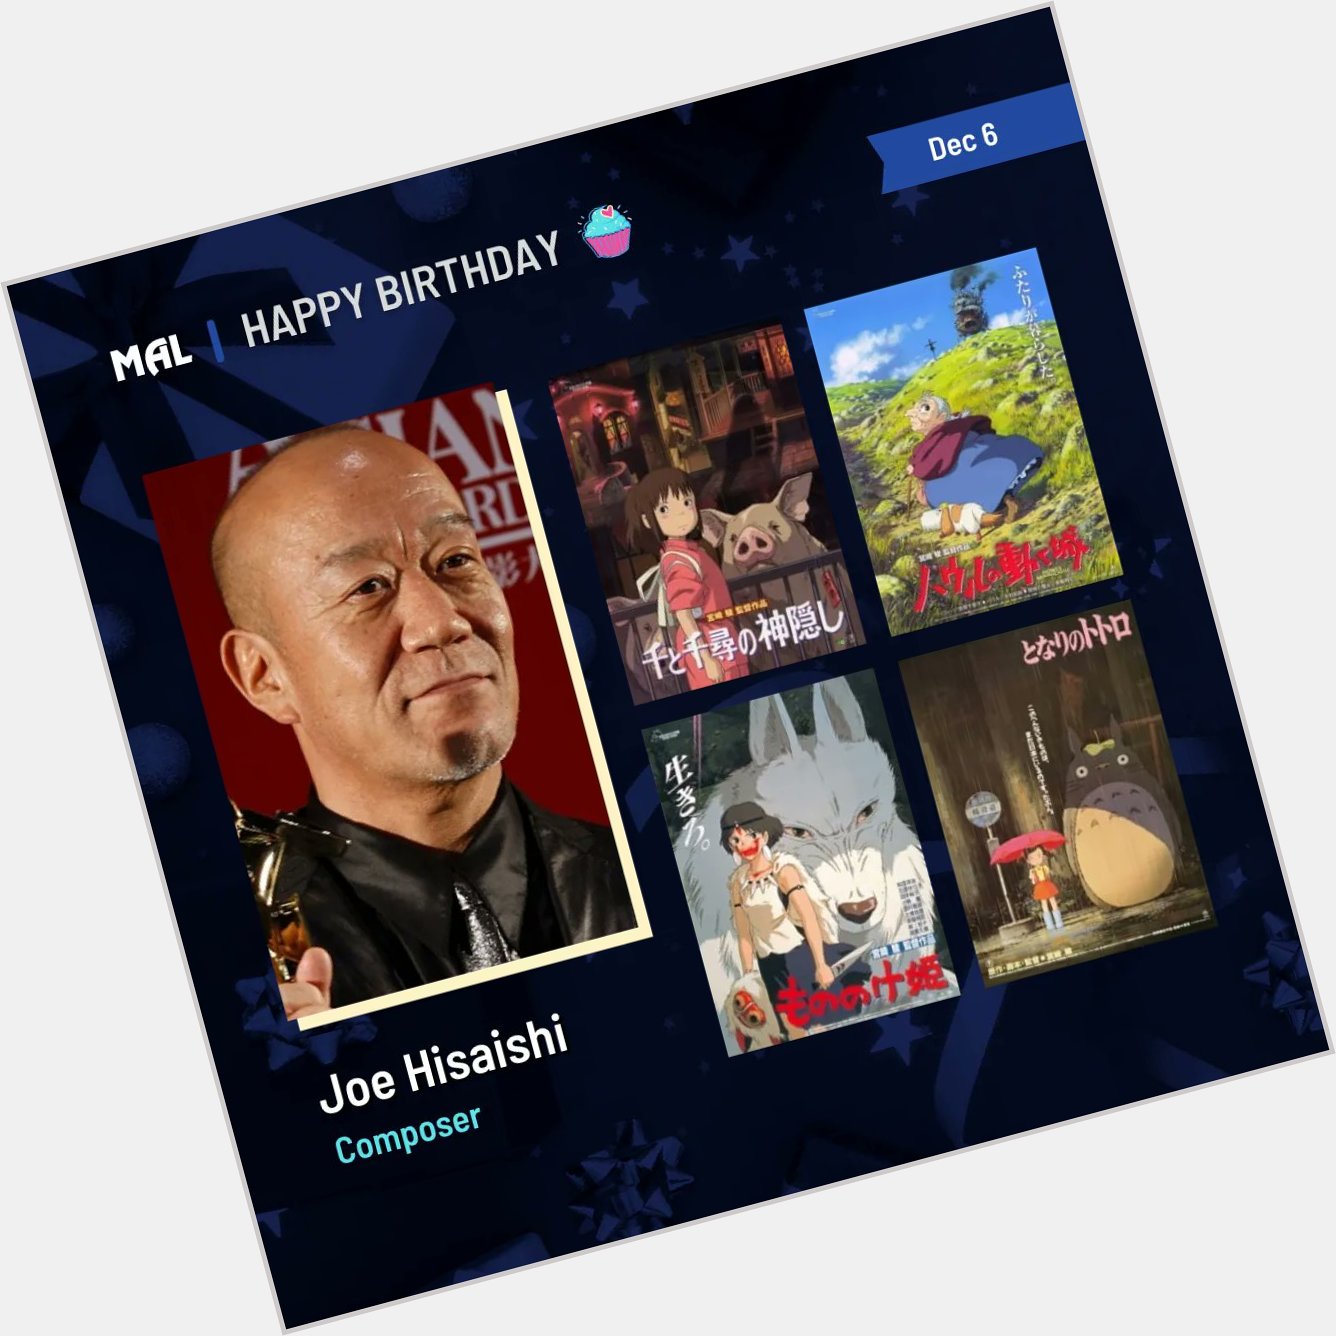 Happy Birthday to Joe Hisaishi! Full profile:  